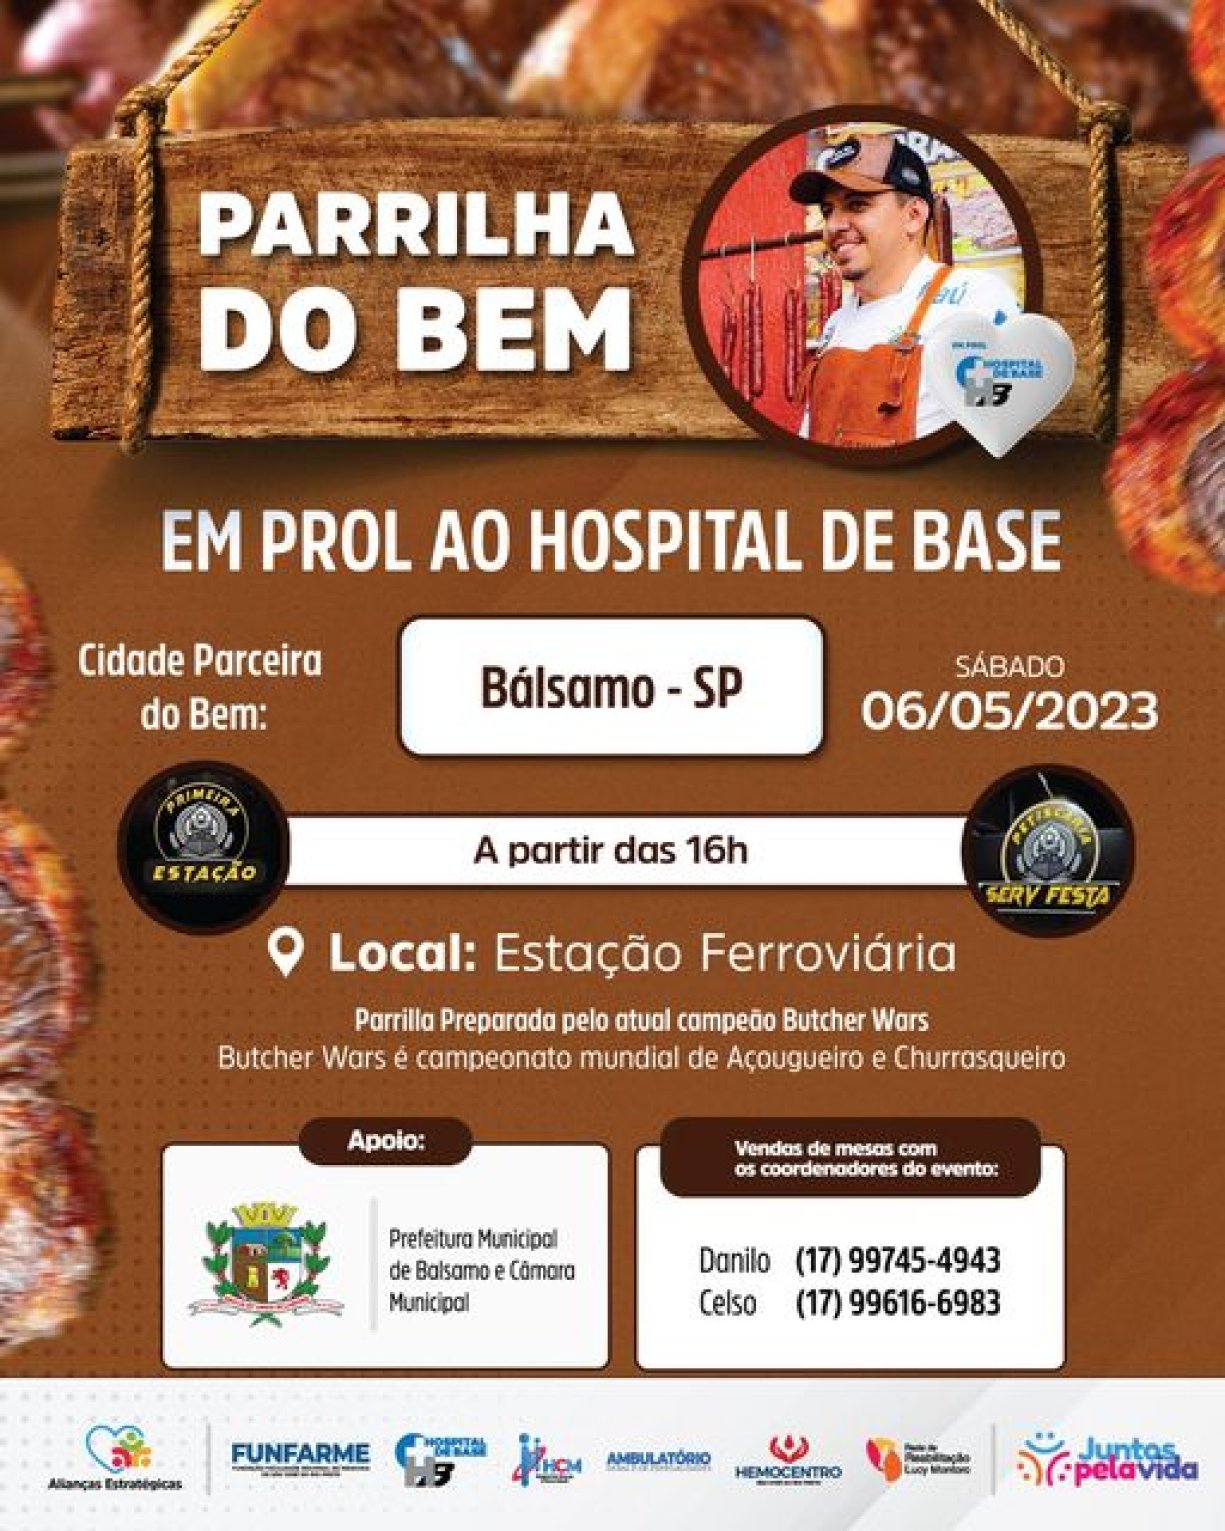 Churrasco Parrilha em prol HB Rio Preto acontece neste sábado